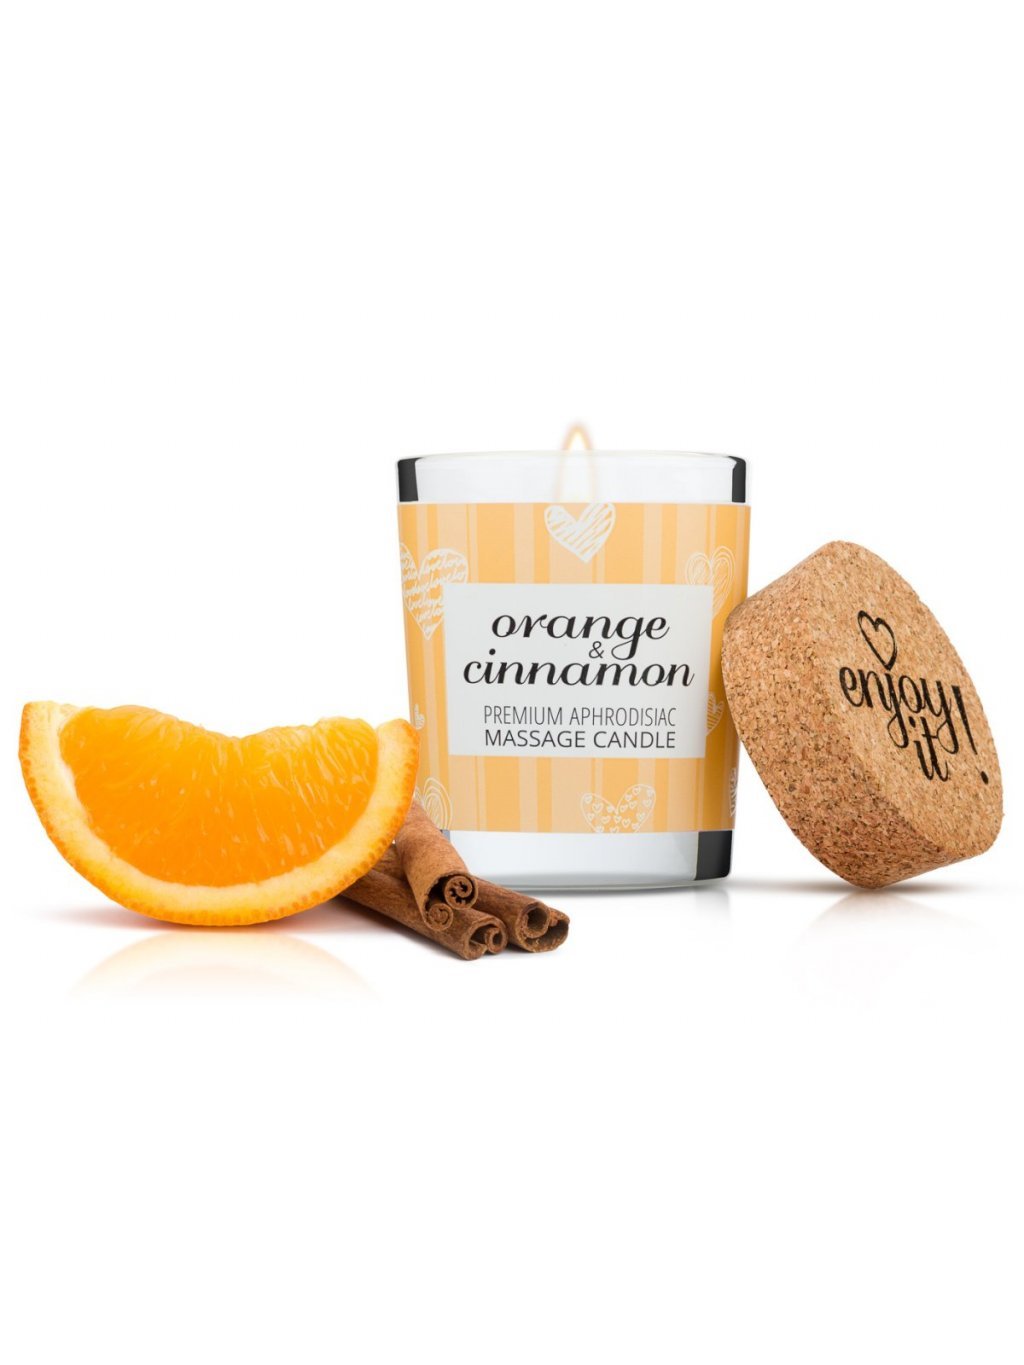 Afrodiziakální masážní svíčka MAGNETIFICO  Enjoy it! Orange and cinnamon